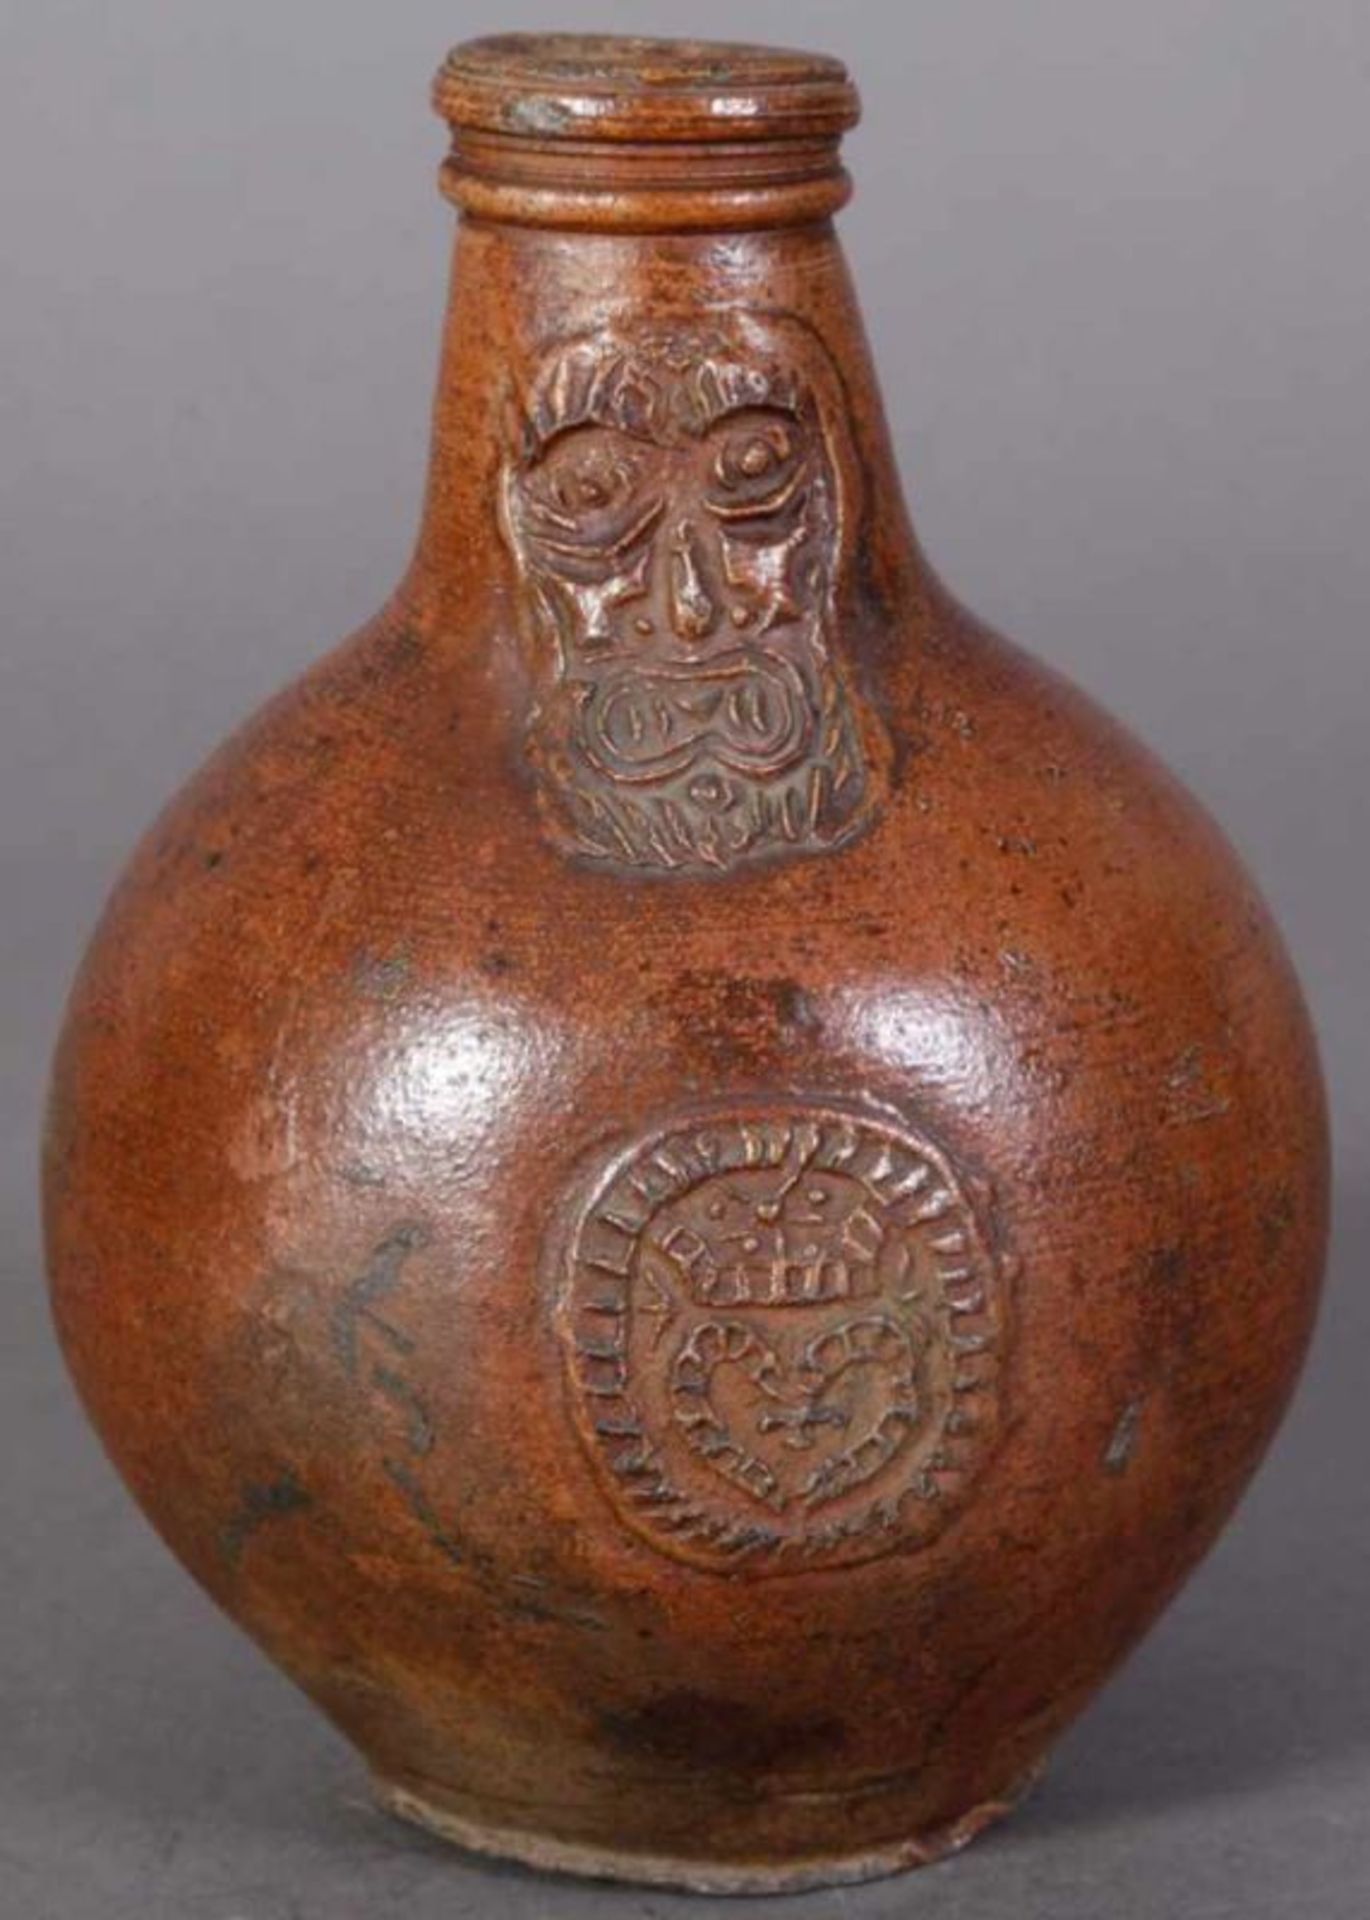 Antiker BARTMANN-KRUG, 18. Jhd., braunes salzglasiertes Steinzeug, Höhe 21 cm, Durchmesser 15 cm.